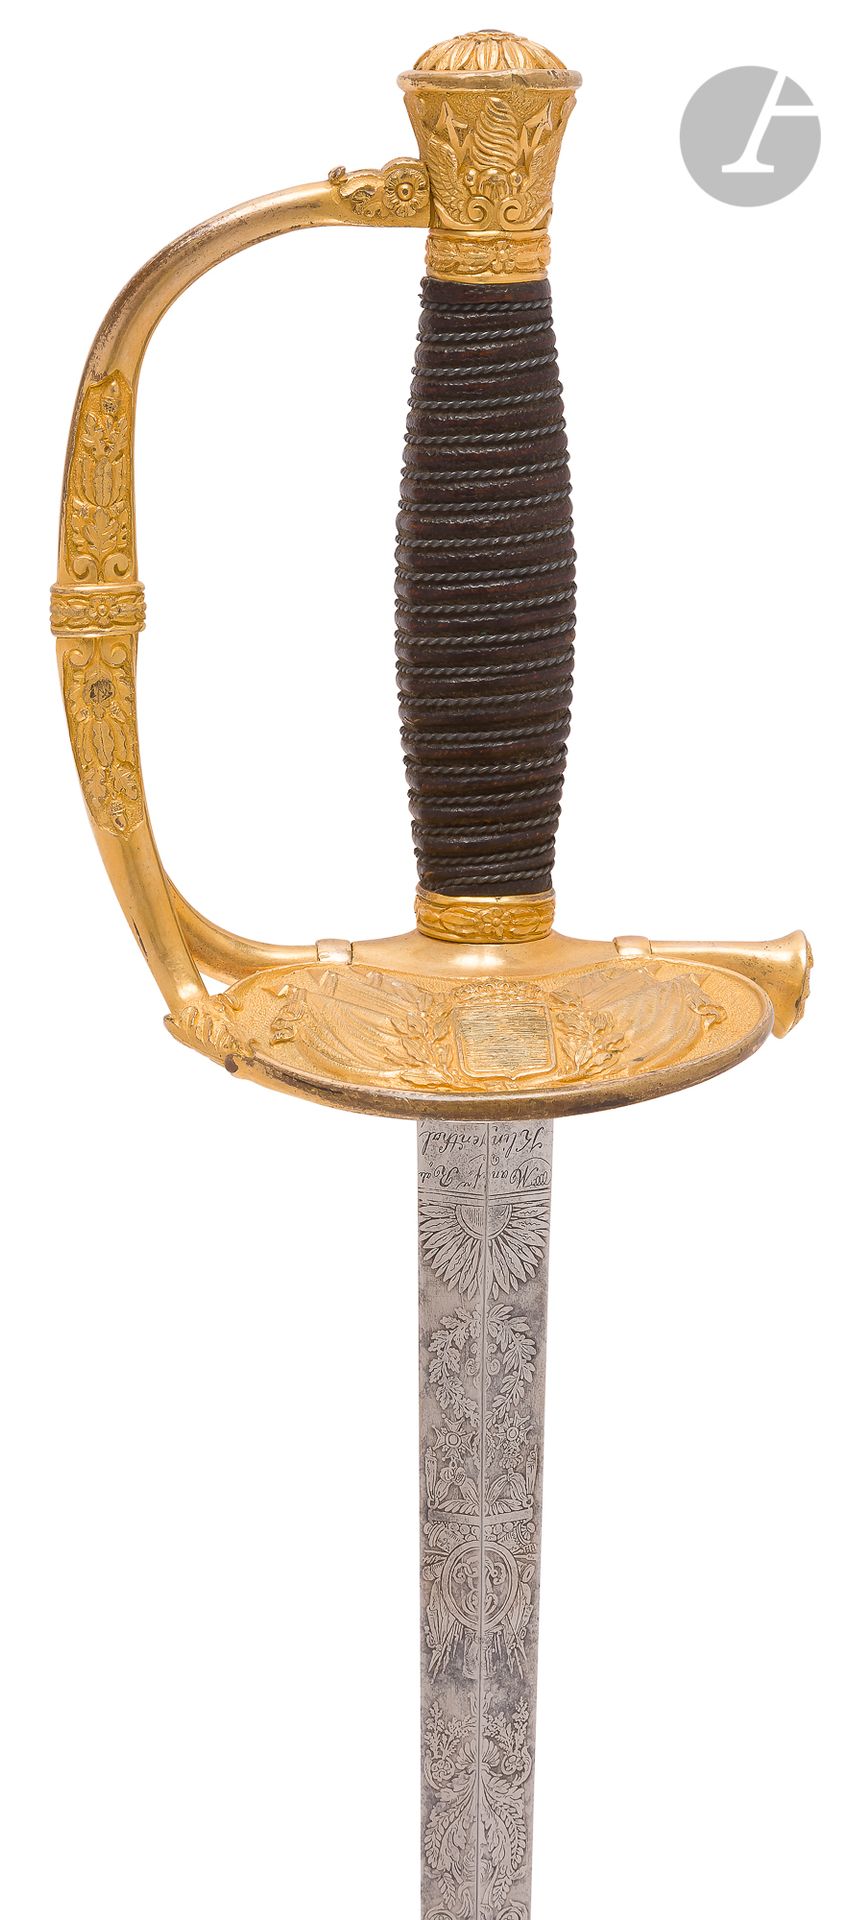 Null 1817年的高级军官佩剑，带有追击装置，在七月君主制下进行了修改。
手柄上覆盖着银色的丝状懊恼。鍍金和鏤空的黃銅鑲嵌，單枝的護欄有橡樹葉裝飾。键盘上有&hellip;